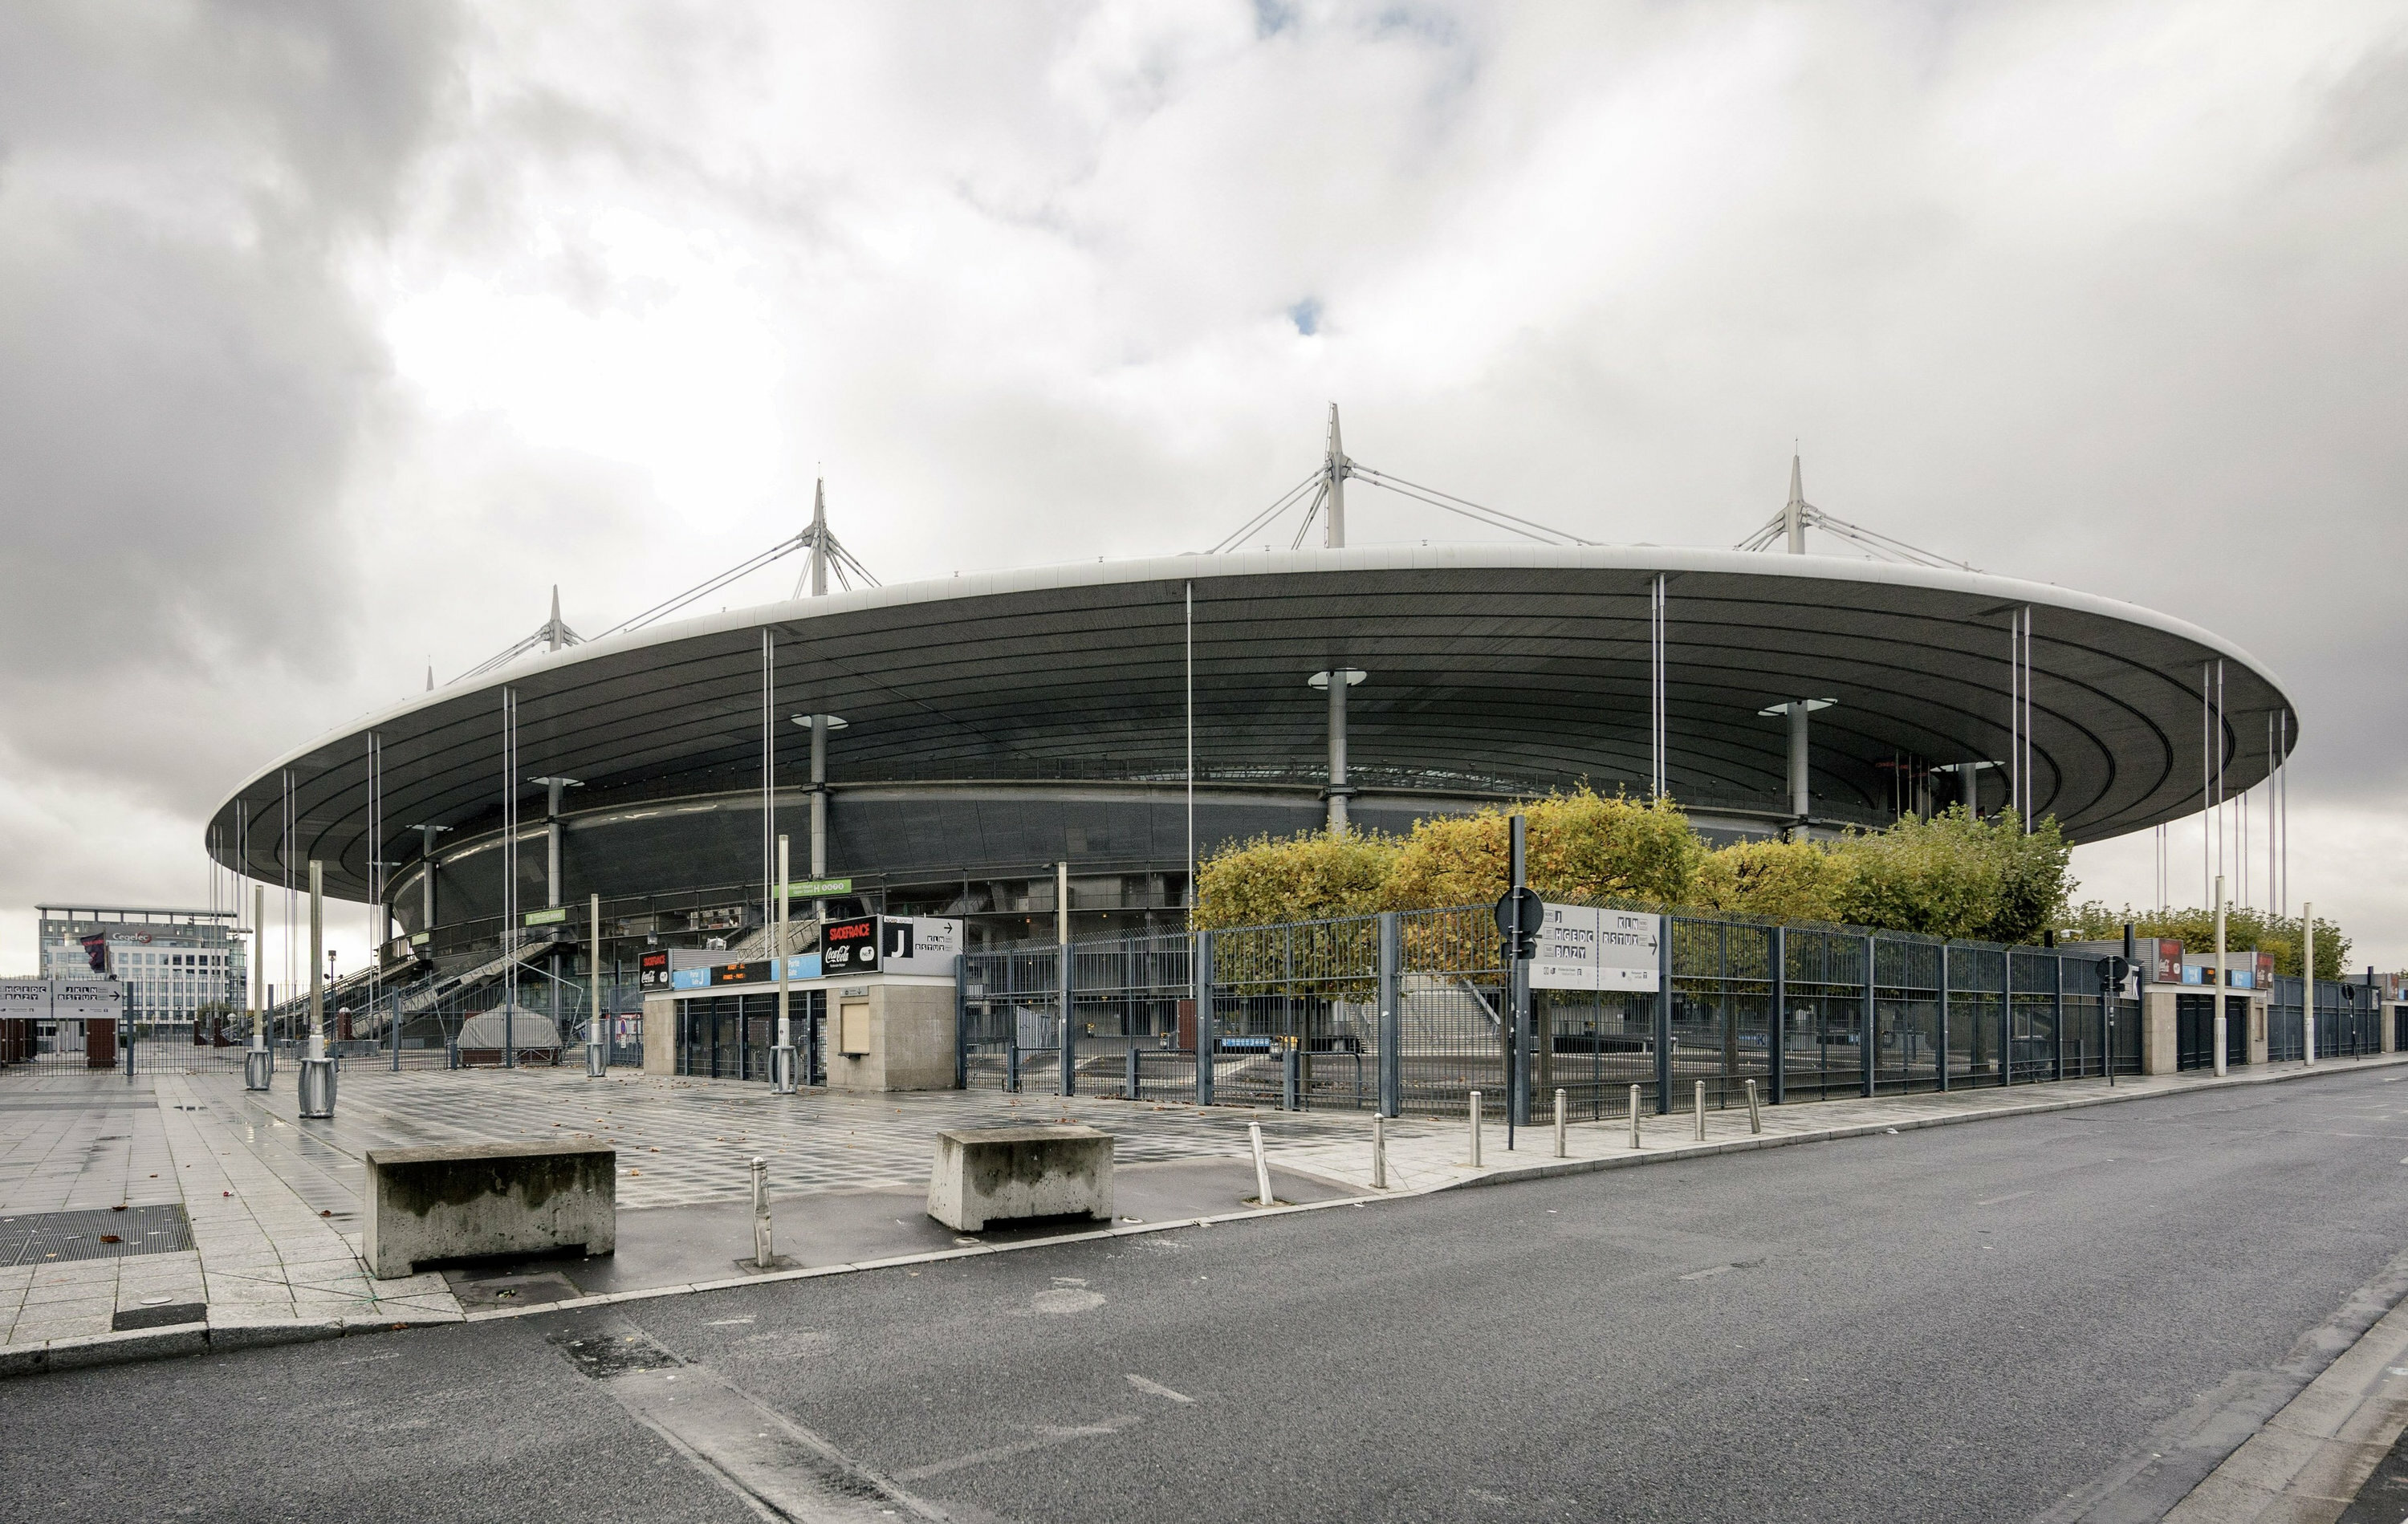 Stade de France In dem Stadion im Pariser Vorort Saint-Denis werden die Leichtathletik-Wettbewerbe und das 7er-Rugby ausgetragen. 77.083 Zuschauer finden im dem Stadion Platz.  In dem Stadion werden sonst Spiele der französischen Fußball-Nationalmannschaft ausgetragen, außerdem das Finale des französischen Pokals. 1998 wurde die französische Nationalmannschaft in diesem Stadion Weltmeister, nach einem 3:0 gegen Brasilien. Auch das Finale der Rugby-Meisterschaft wird im Stade de France gespielt.  Dass Leichtathletik-Wettbewerbe in dem Stadion ausgetragen werden können, liegt daran, dass die Tribünen verschiebbar sind. Für ein normales Fußballspiel der „Les Bleus“ fasst das Stadion dann sogar über 81.000 Zuschauer.